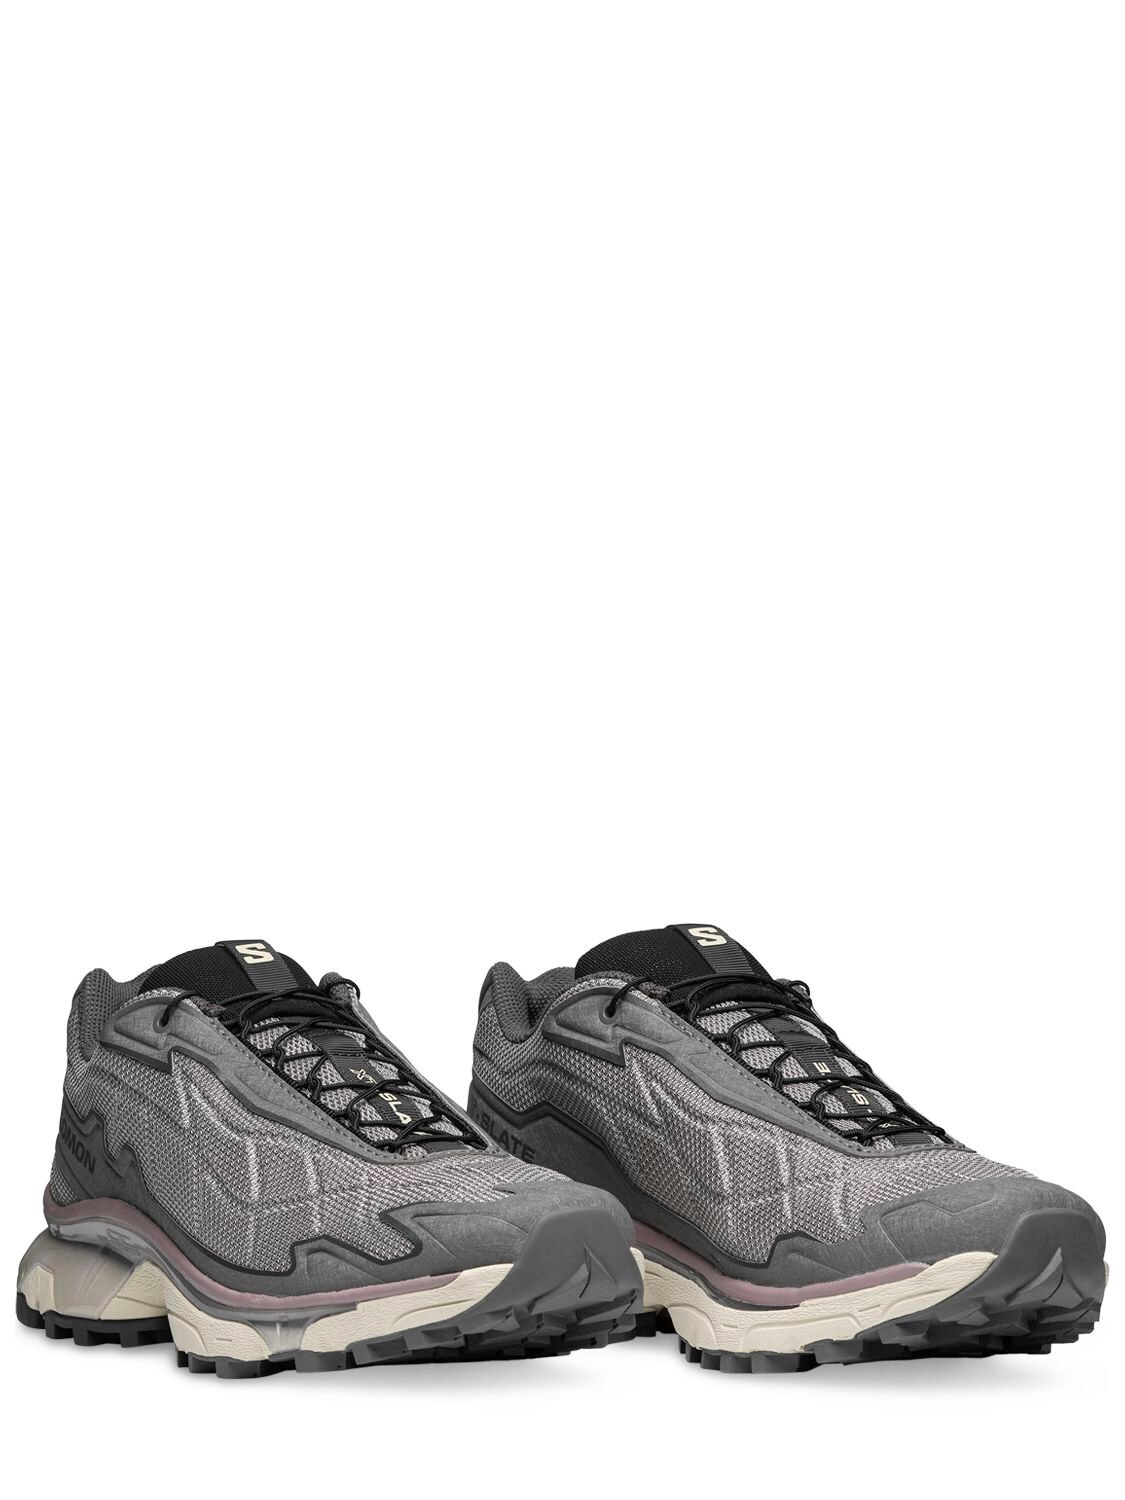 Salomon Xt-slate Advanced Sneakers In Grey | ModeSens